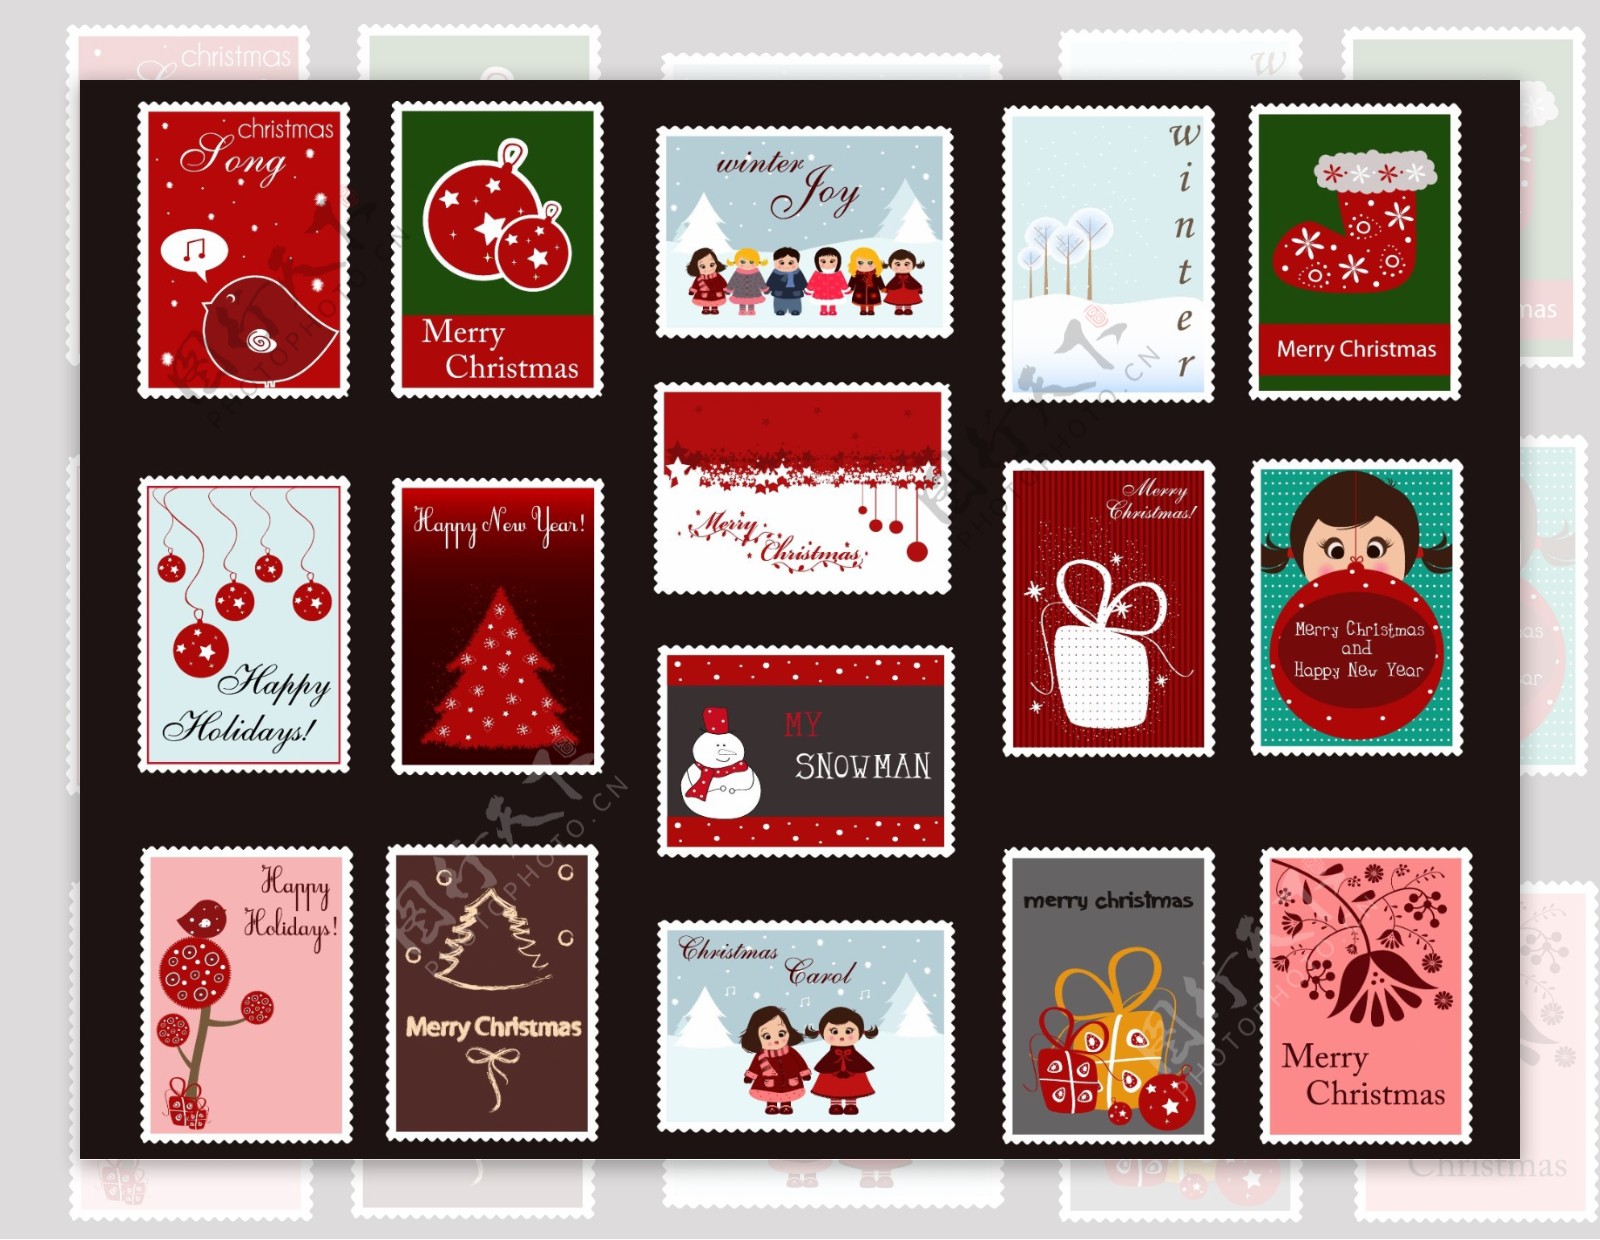 圣诞节邮票设计矢量素材